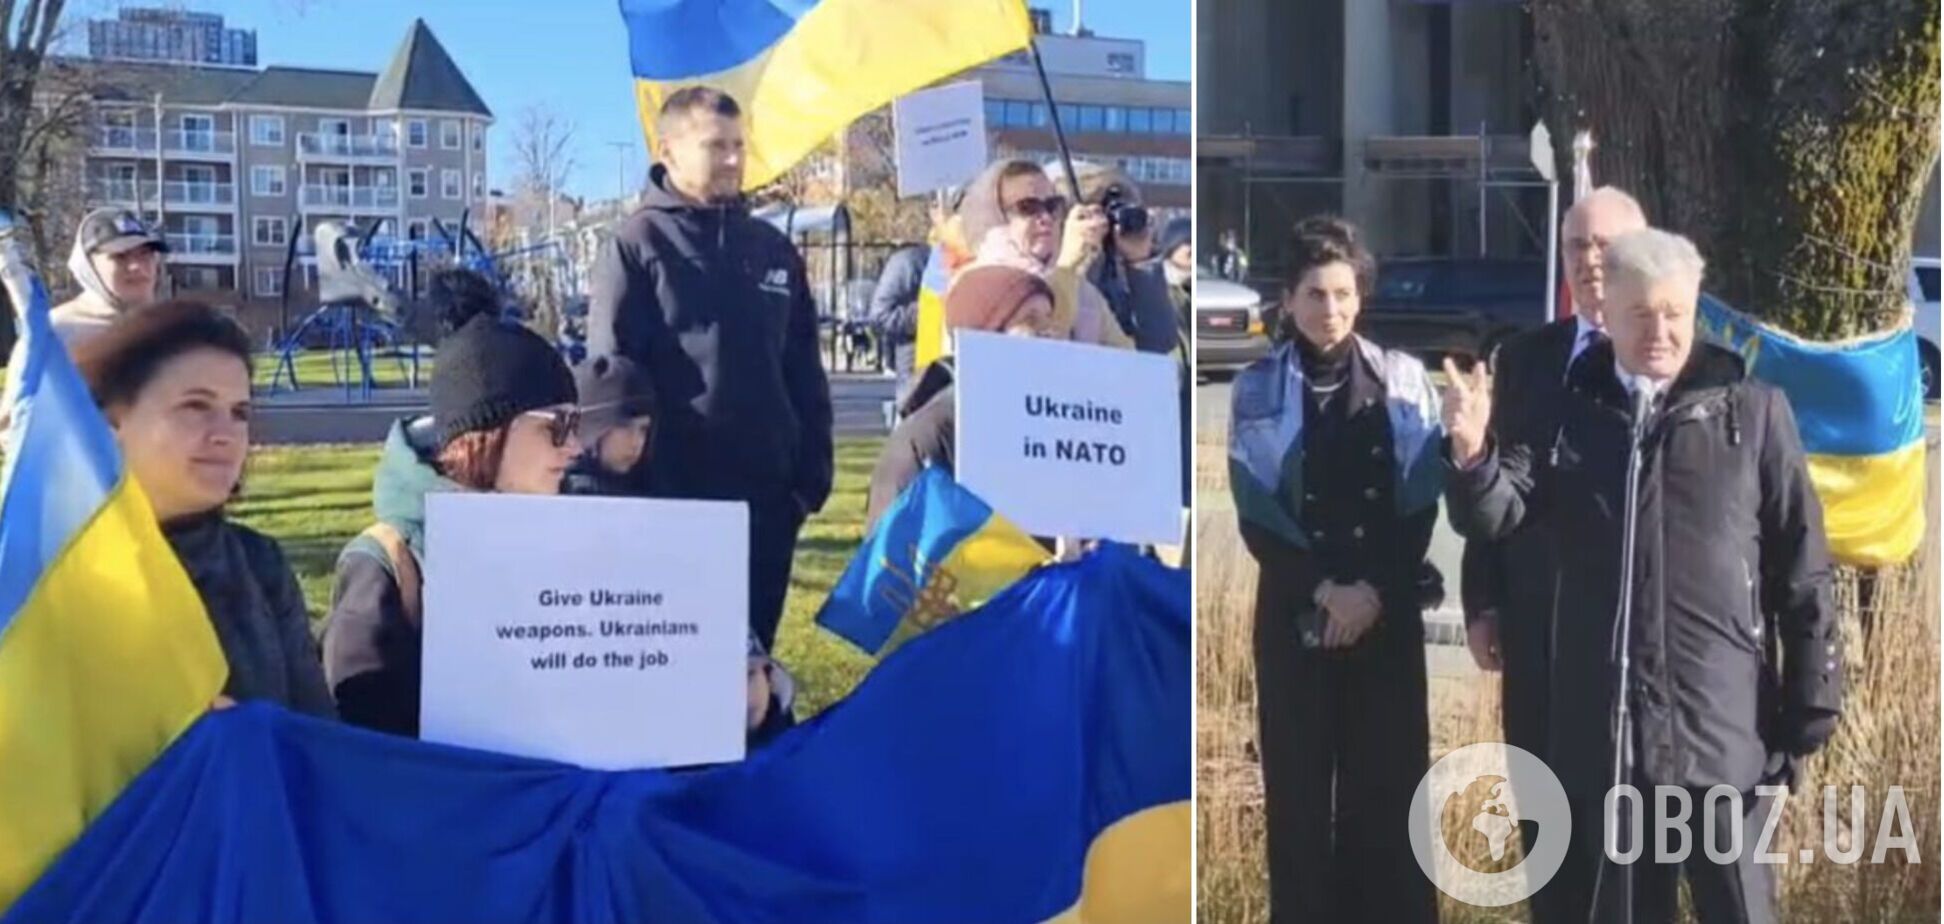 Порошенко та міністр оборони Канади виступили на проукраїнському мітингу у Галіфаксі